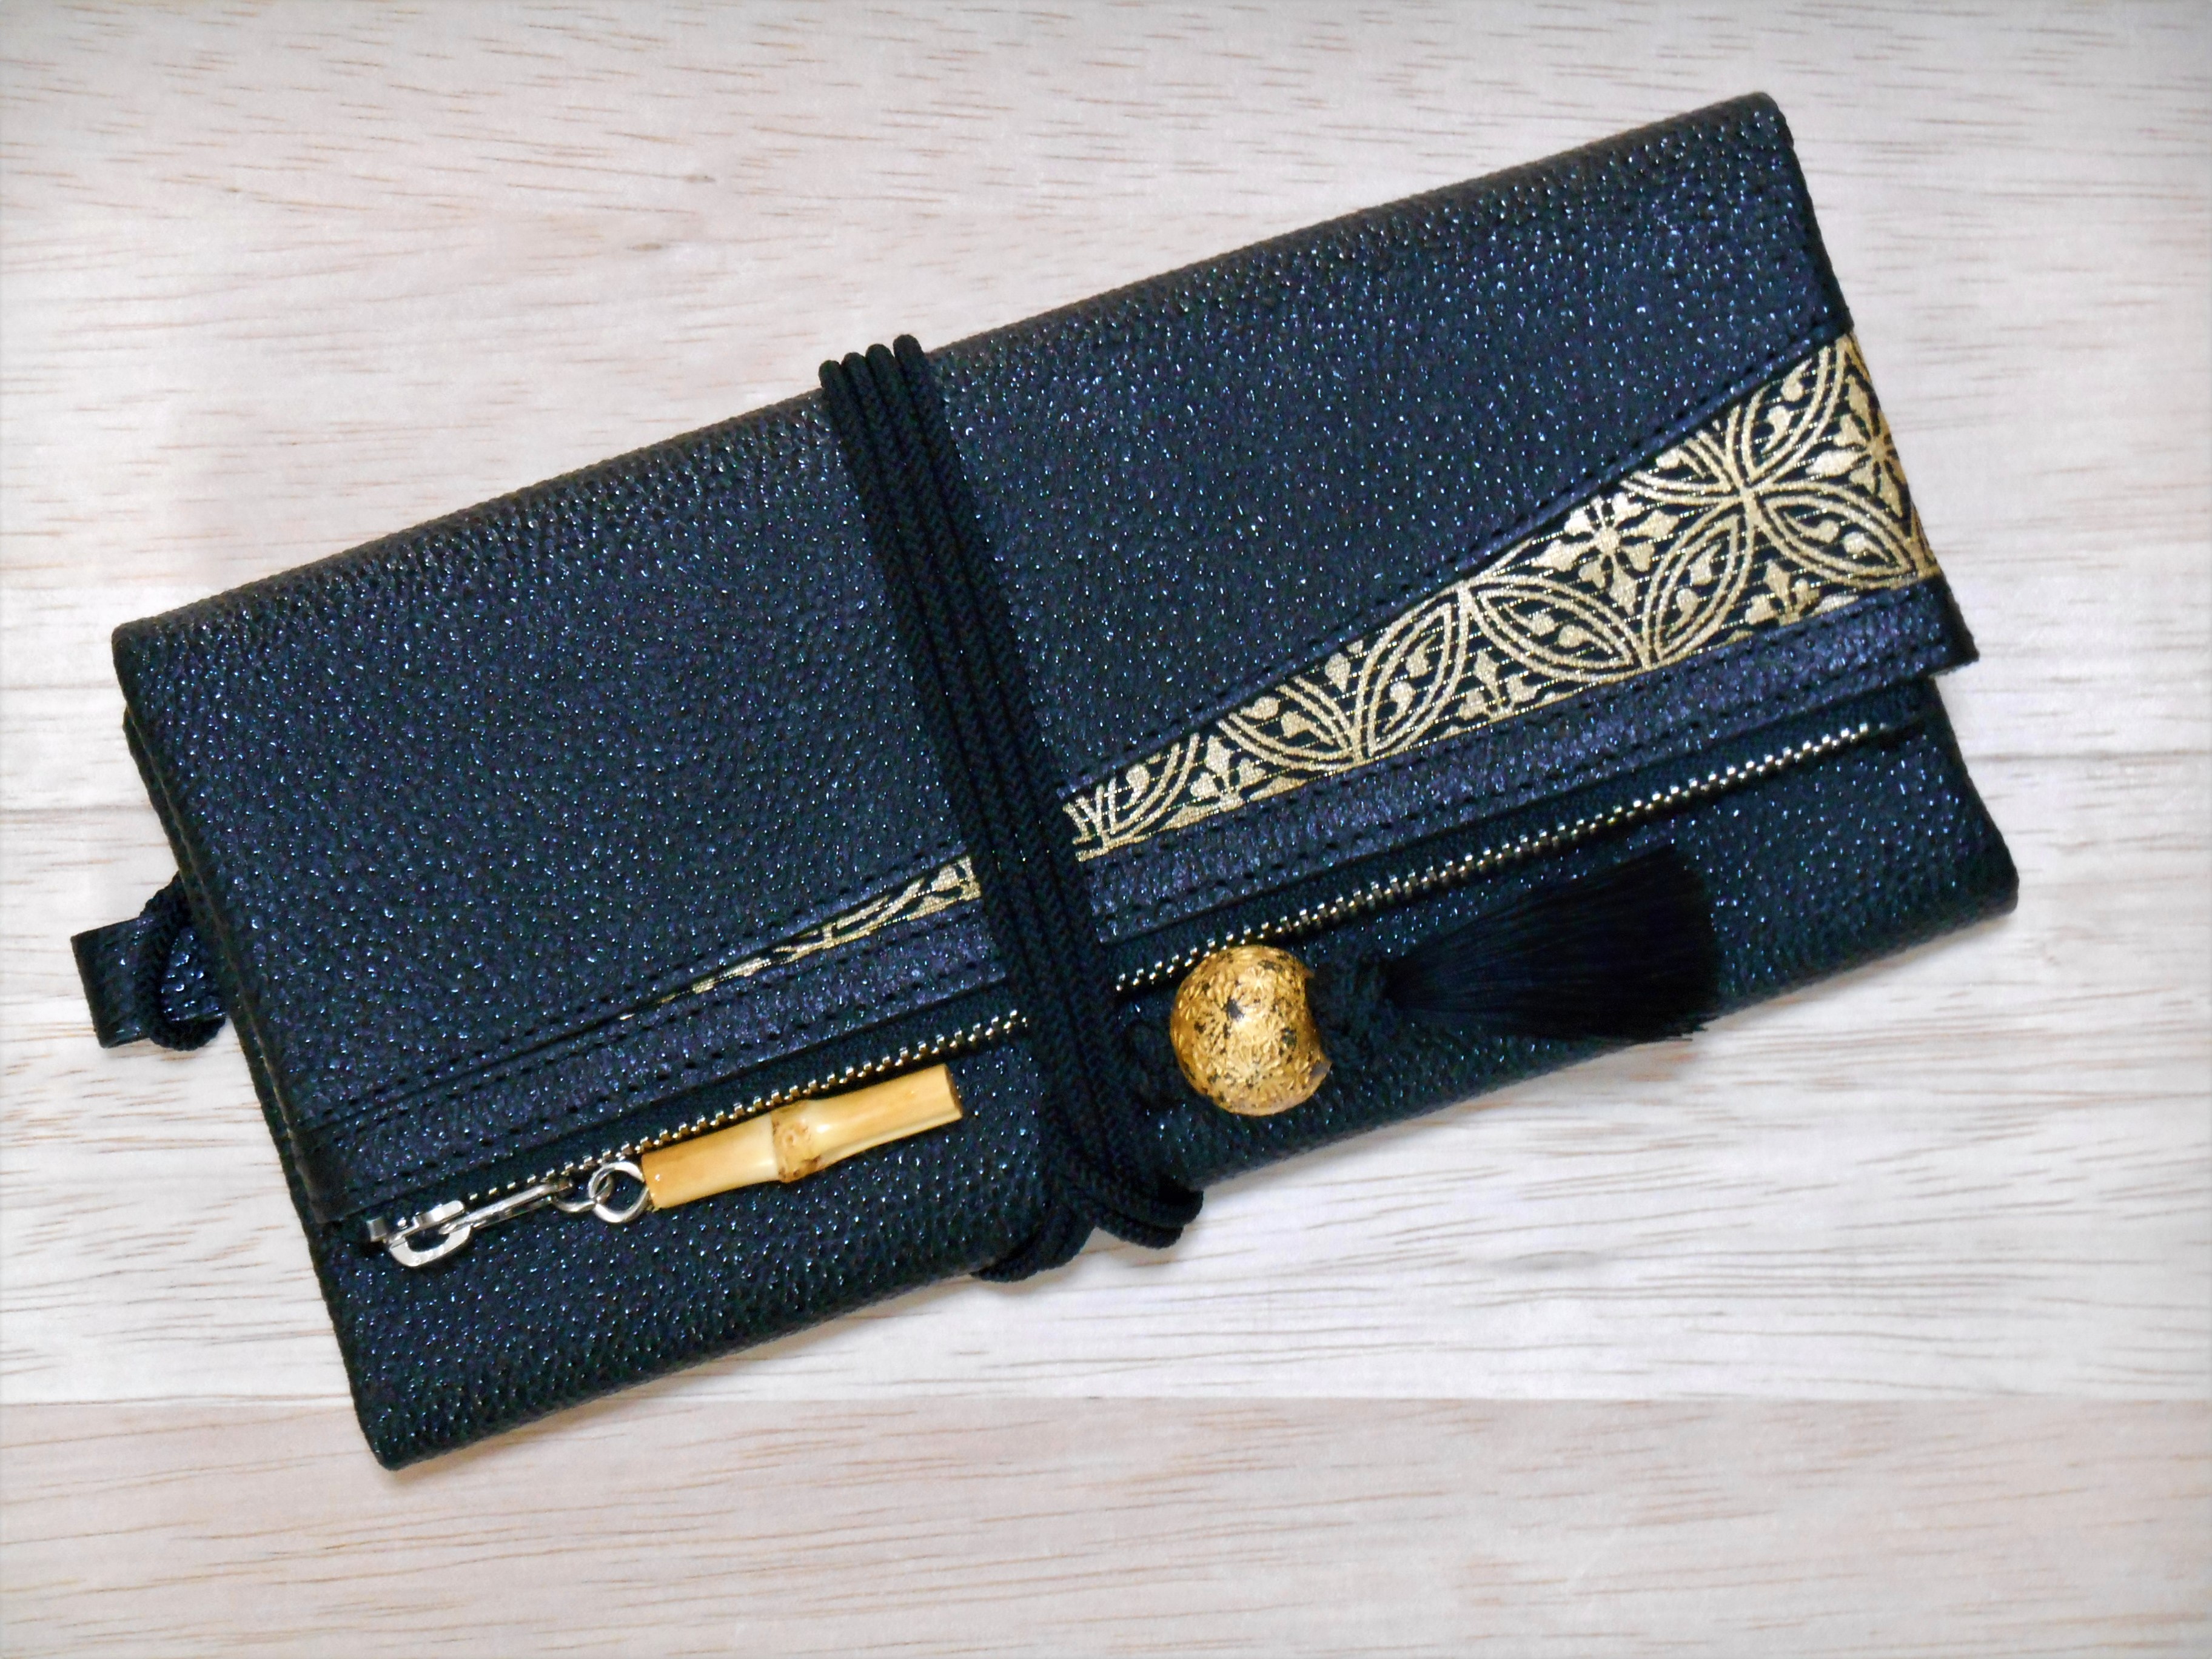 特別仕様の姫路黒桟革製道中財布が仕上がってきました！！